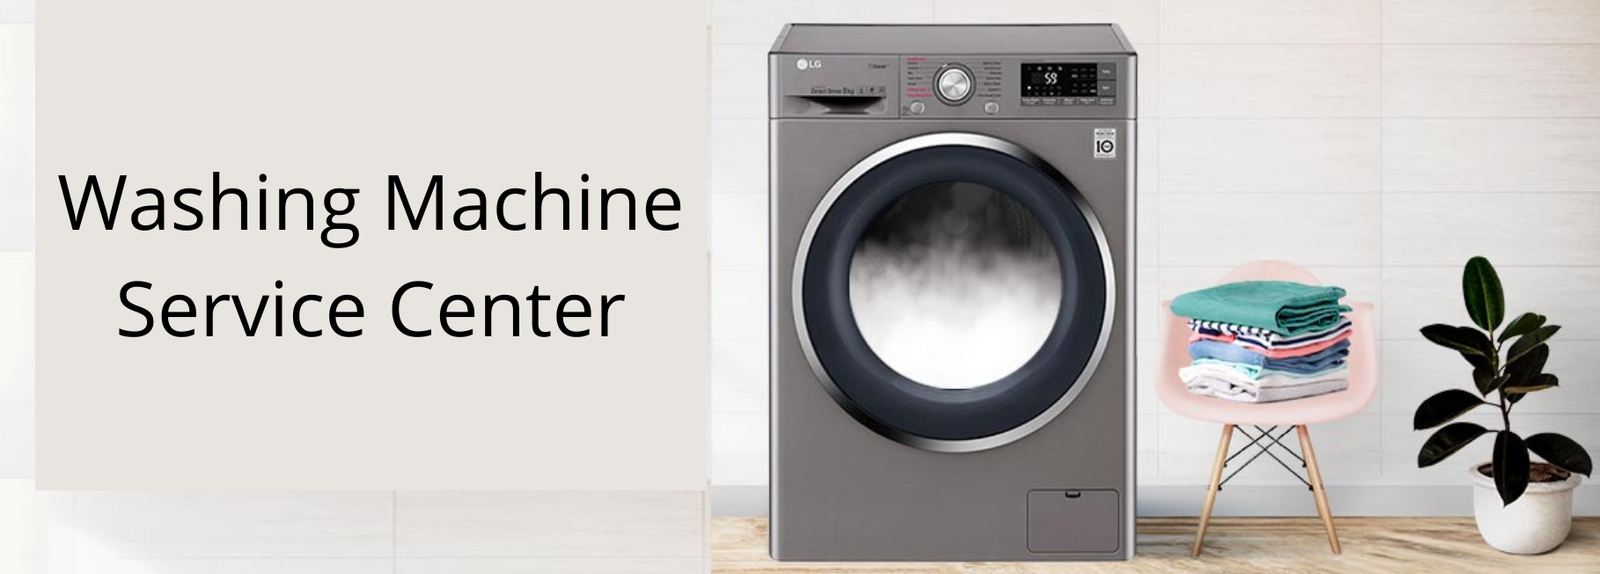 Washing-Machine-Service-Center